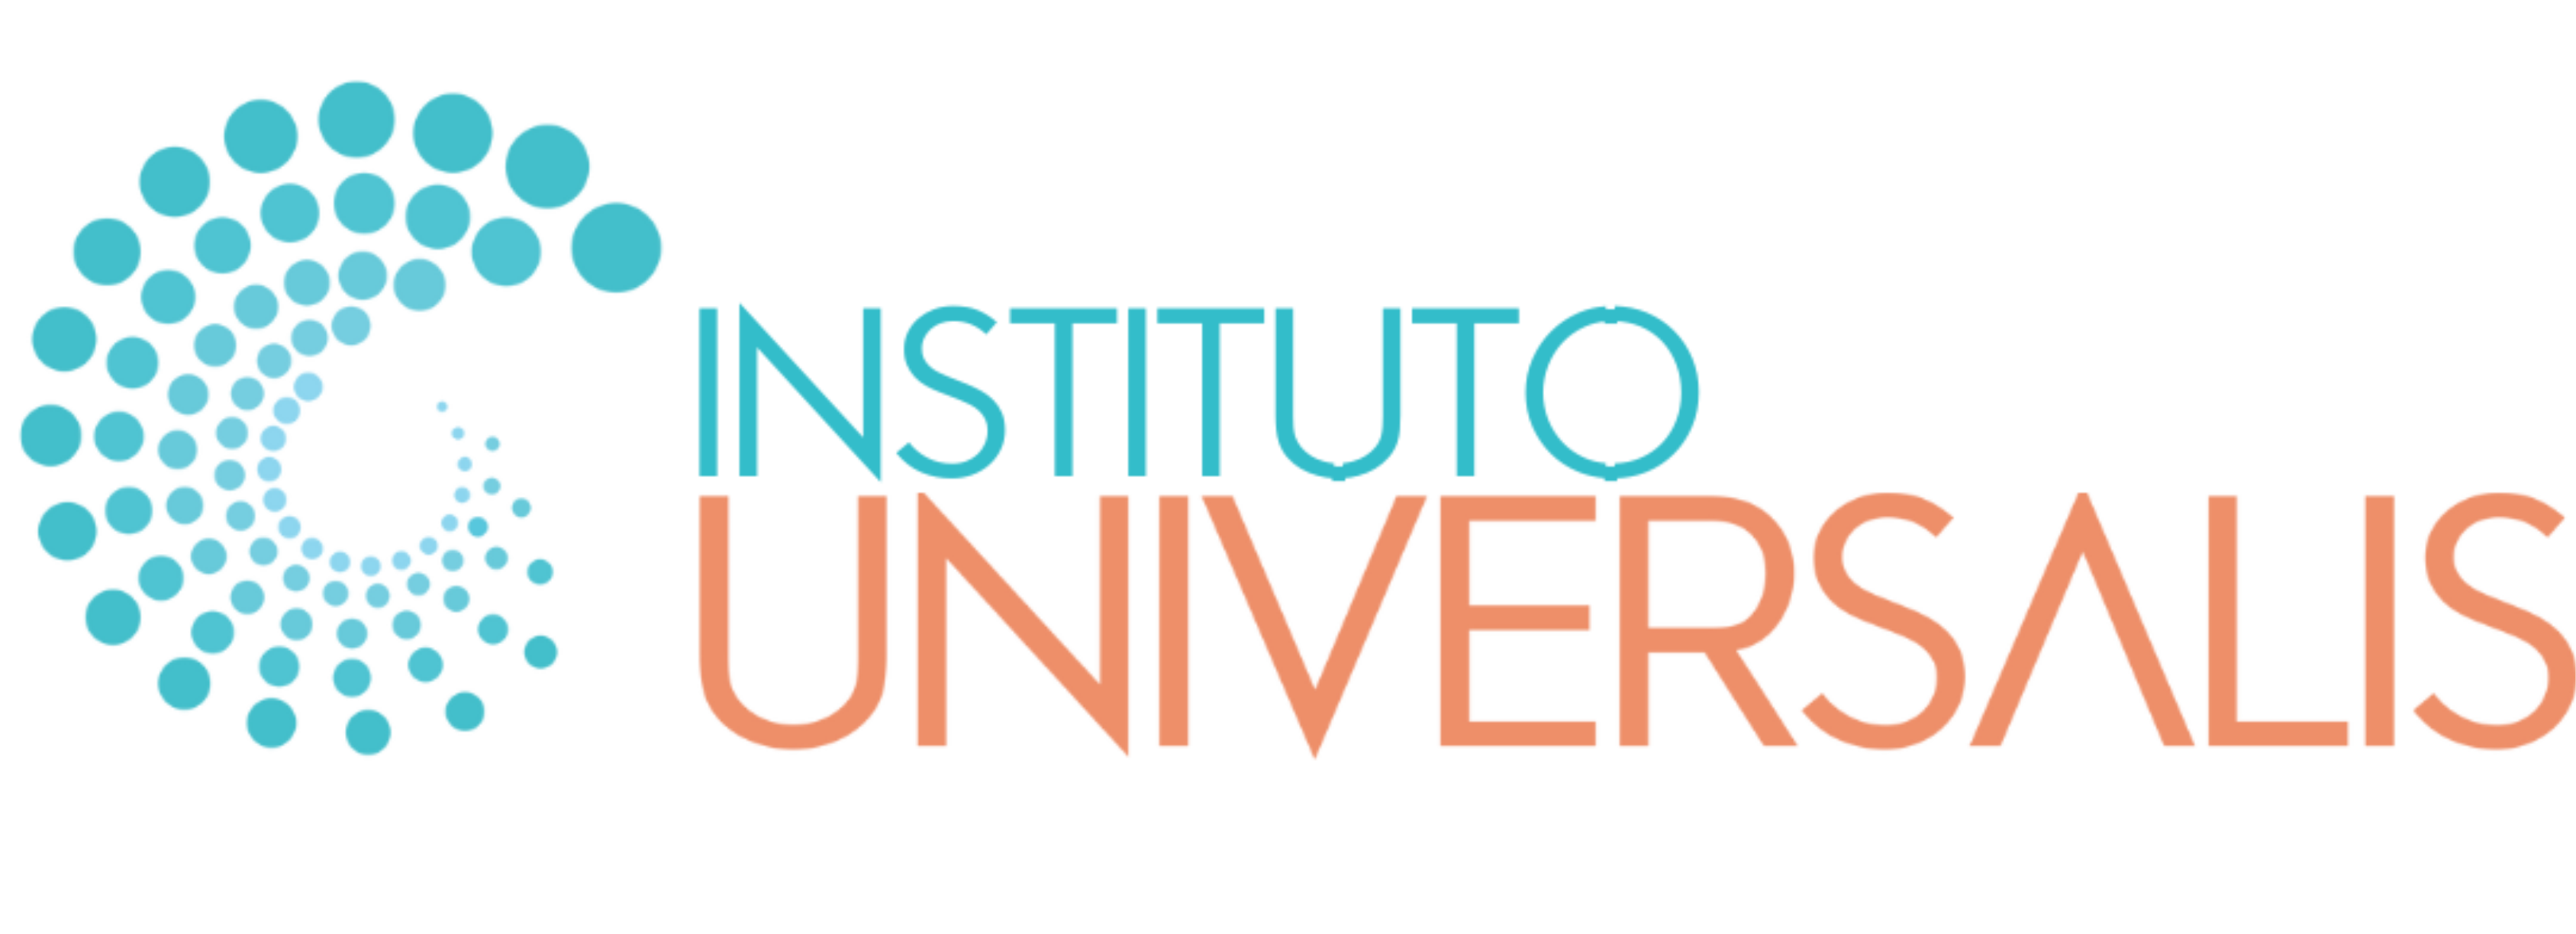 Universalis logo